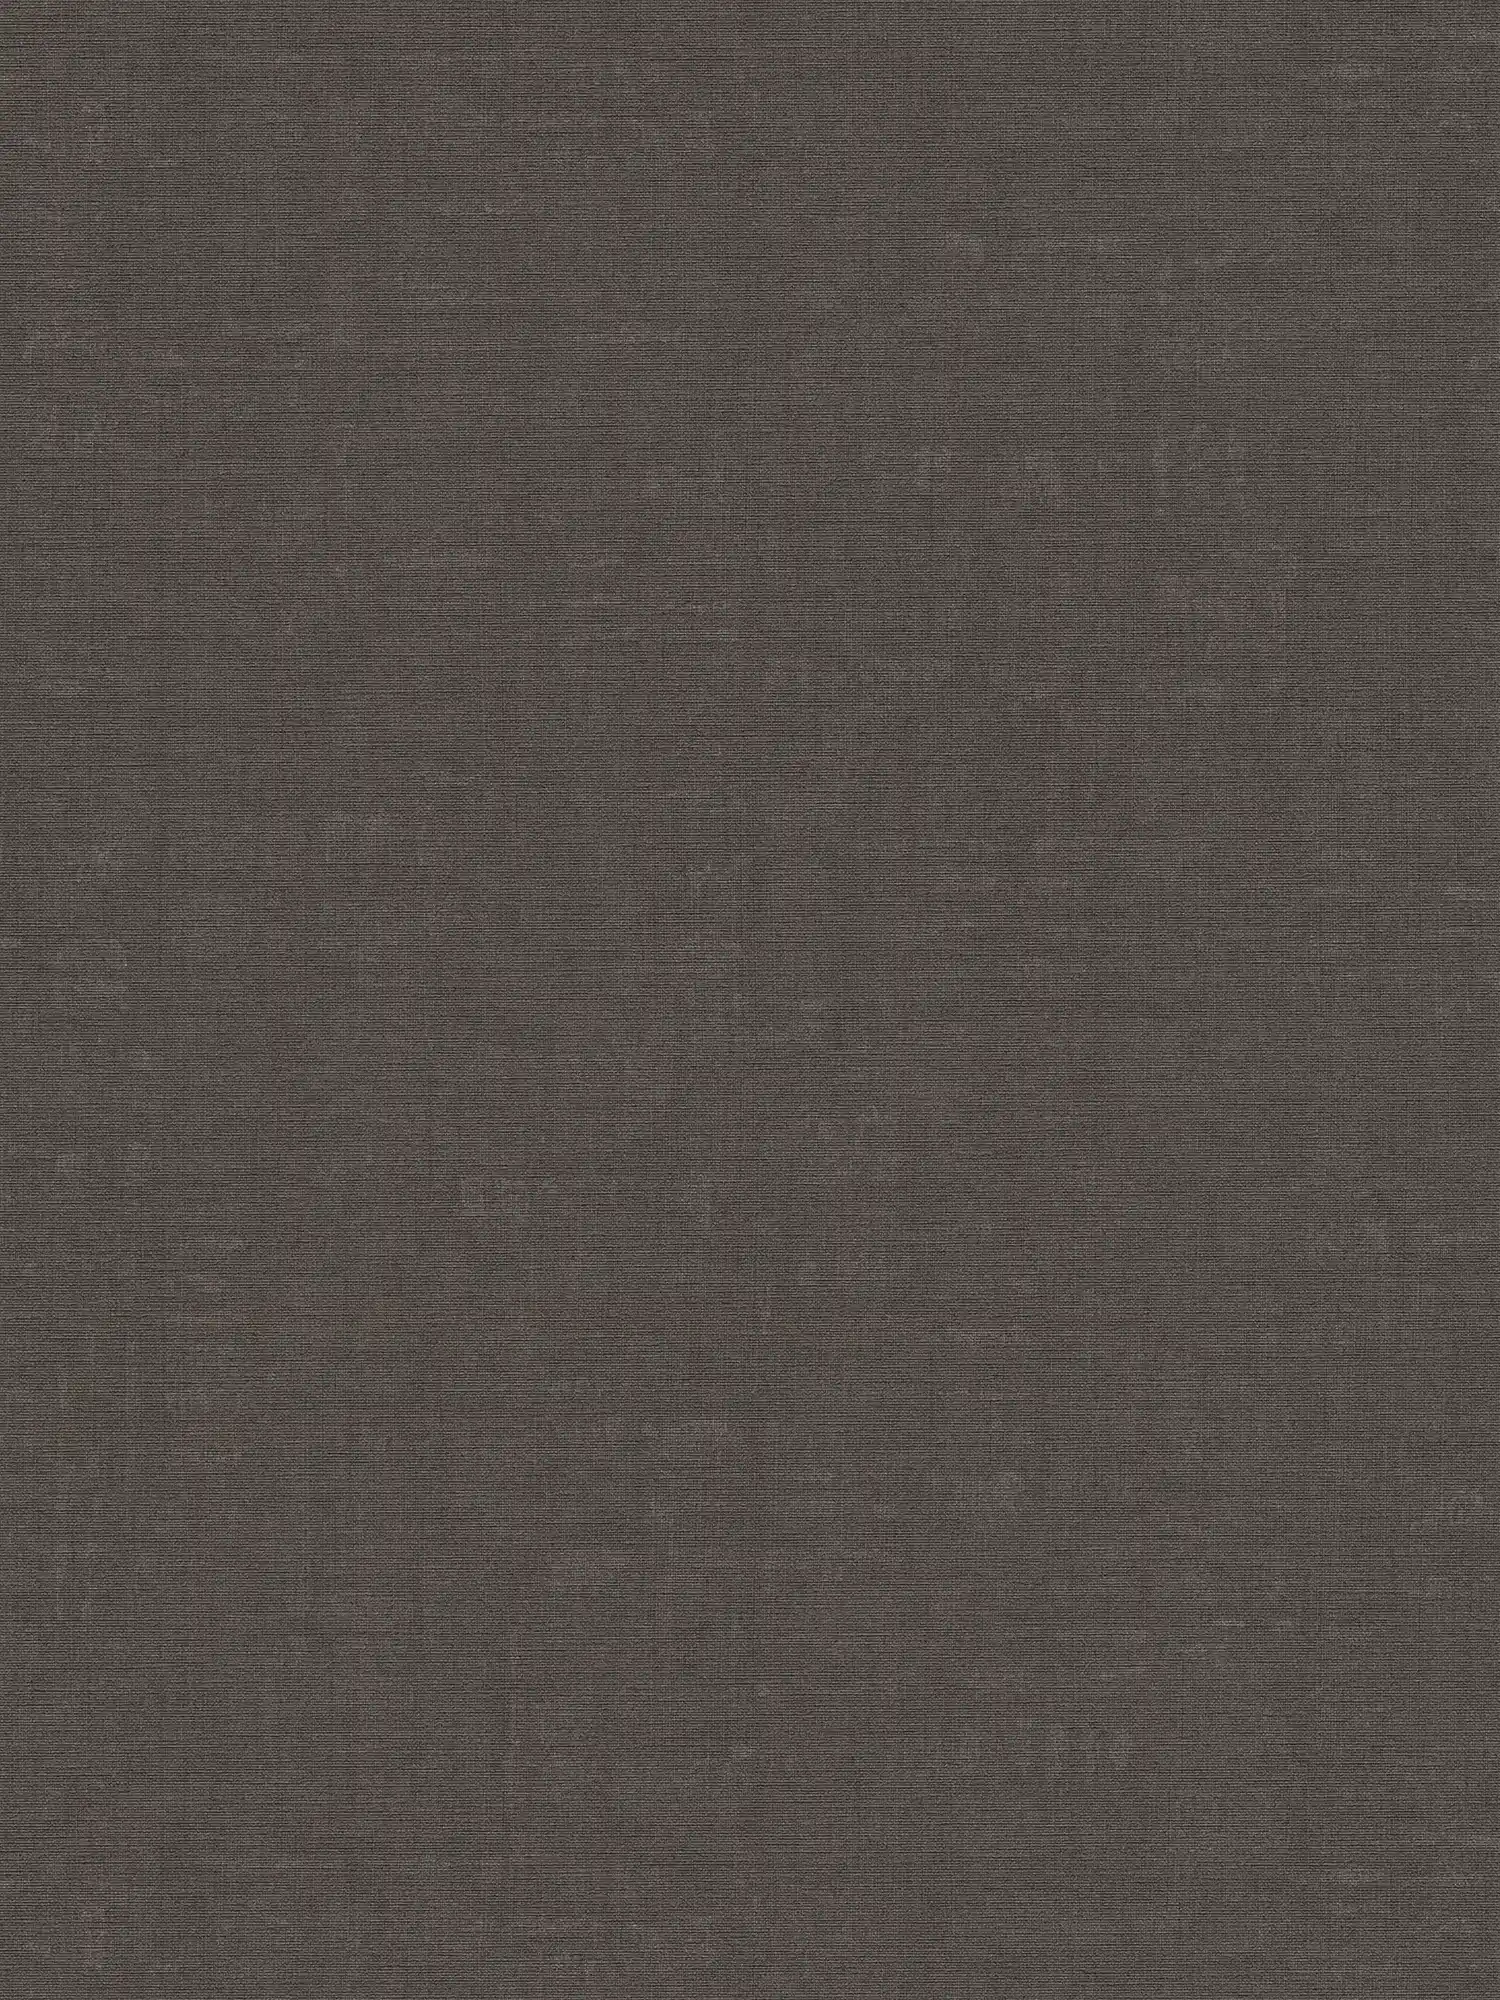 Gemêleerd behang effen met structuurdesign - grijs, zwart
